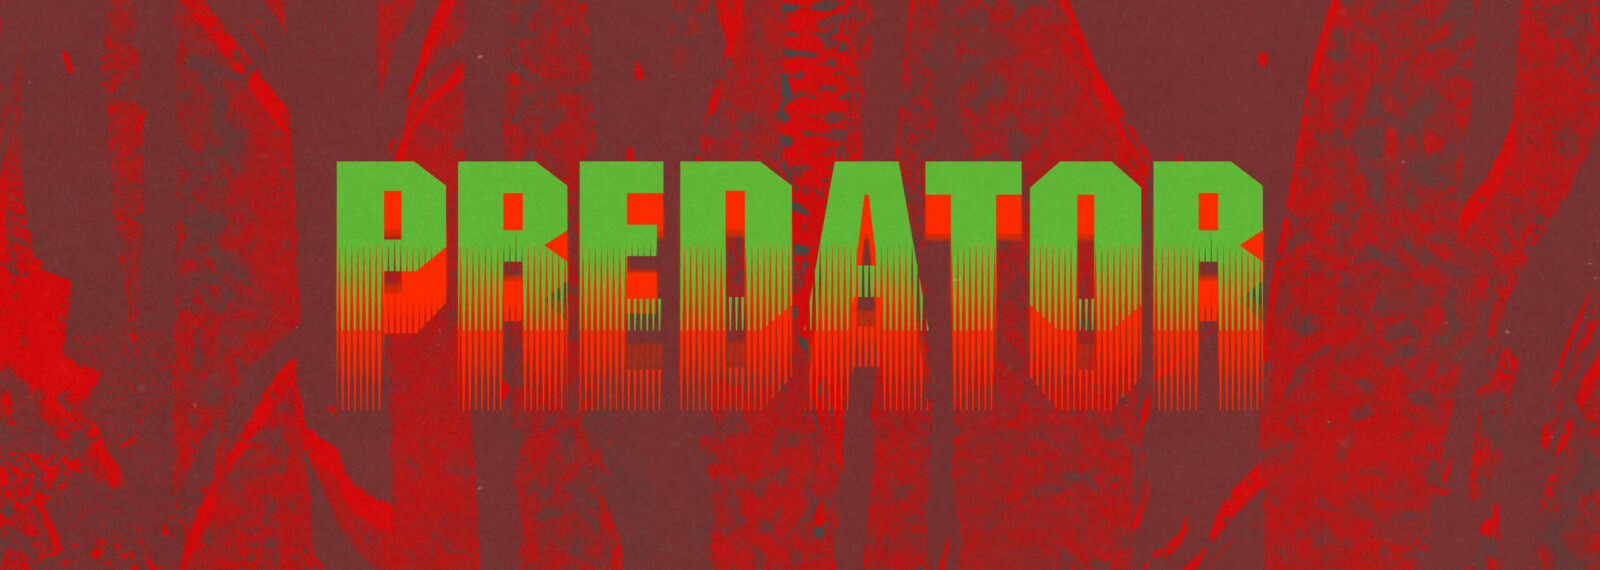 Predator: If it Bleeds